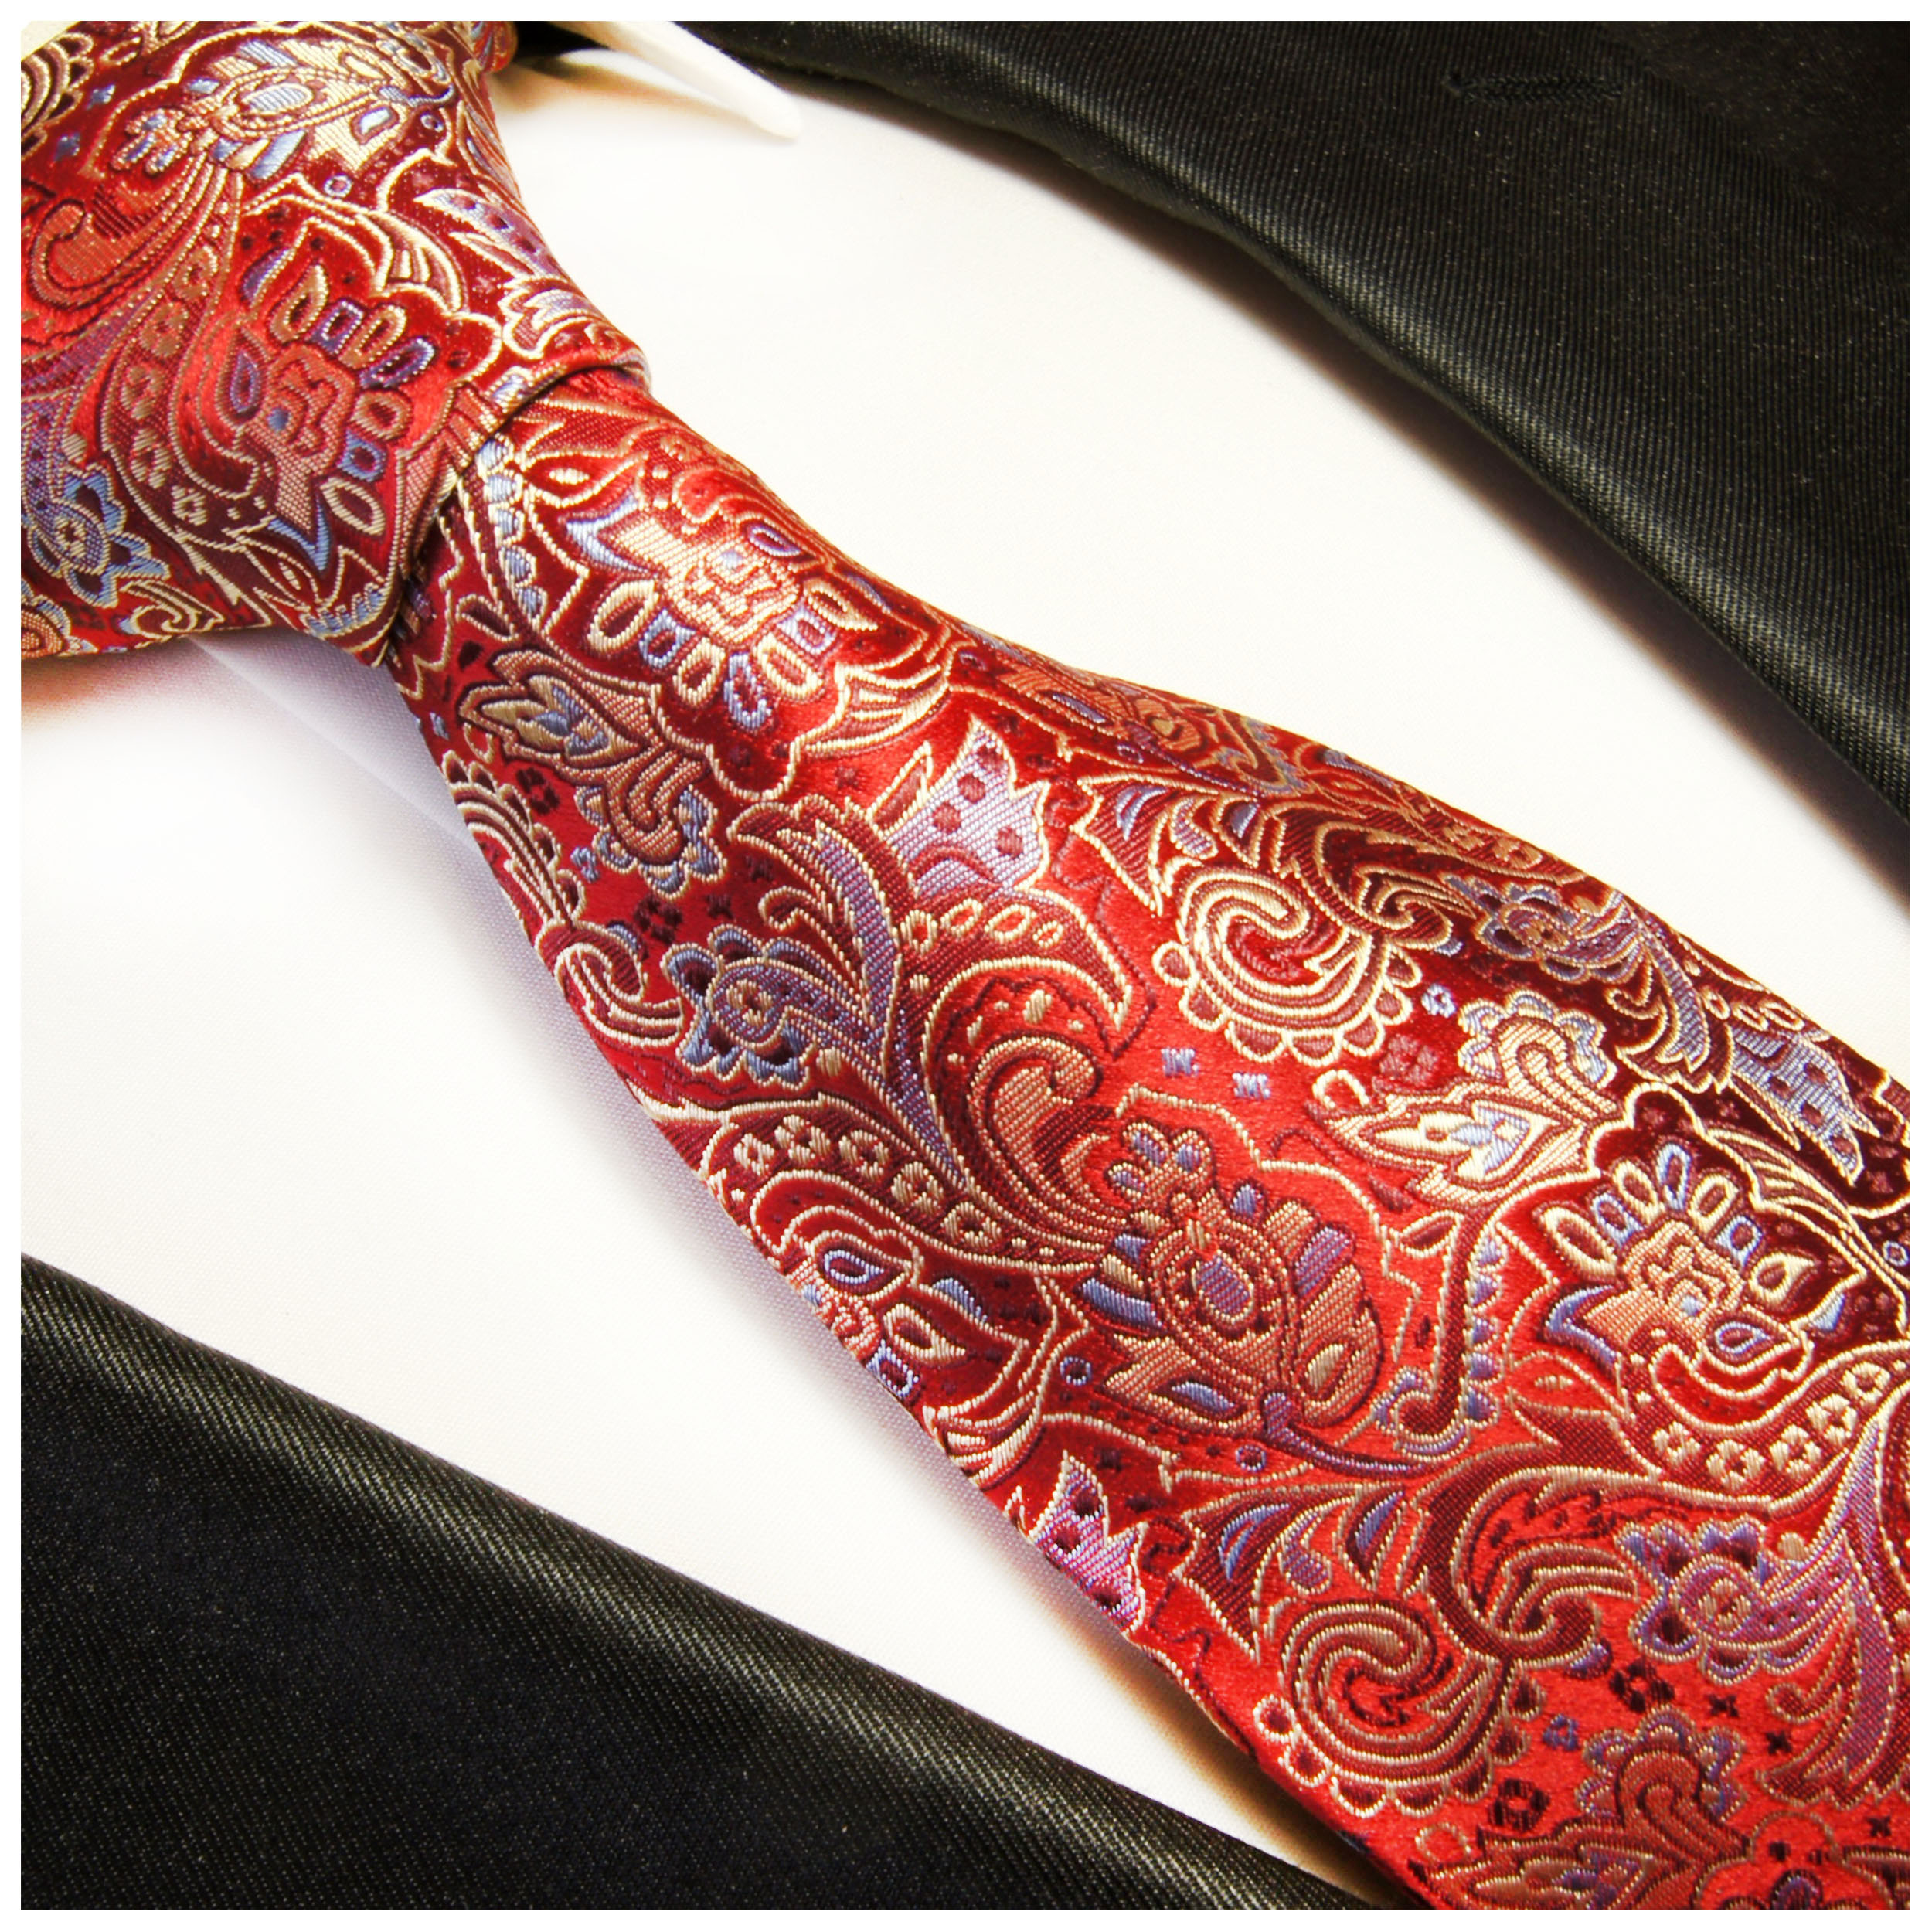 Seide | Shop Paul - JETZT rot Krawatte 350 Malone BESTELLEN paisley